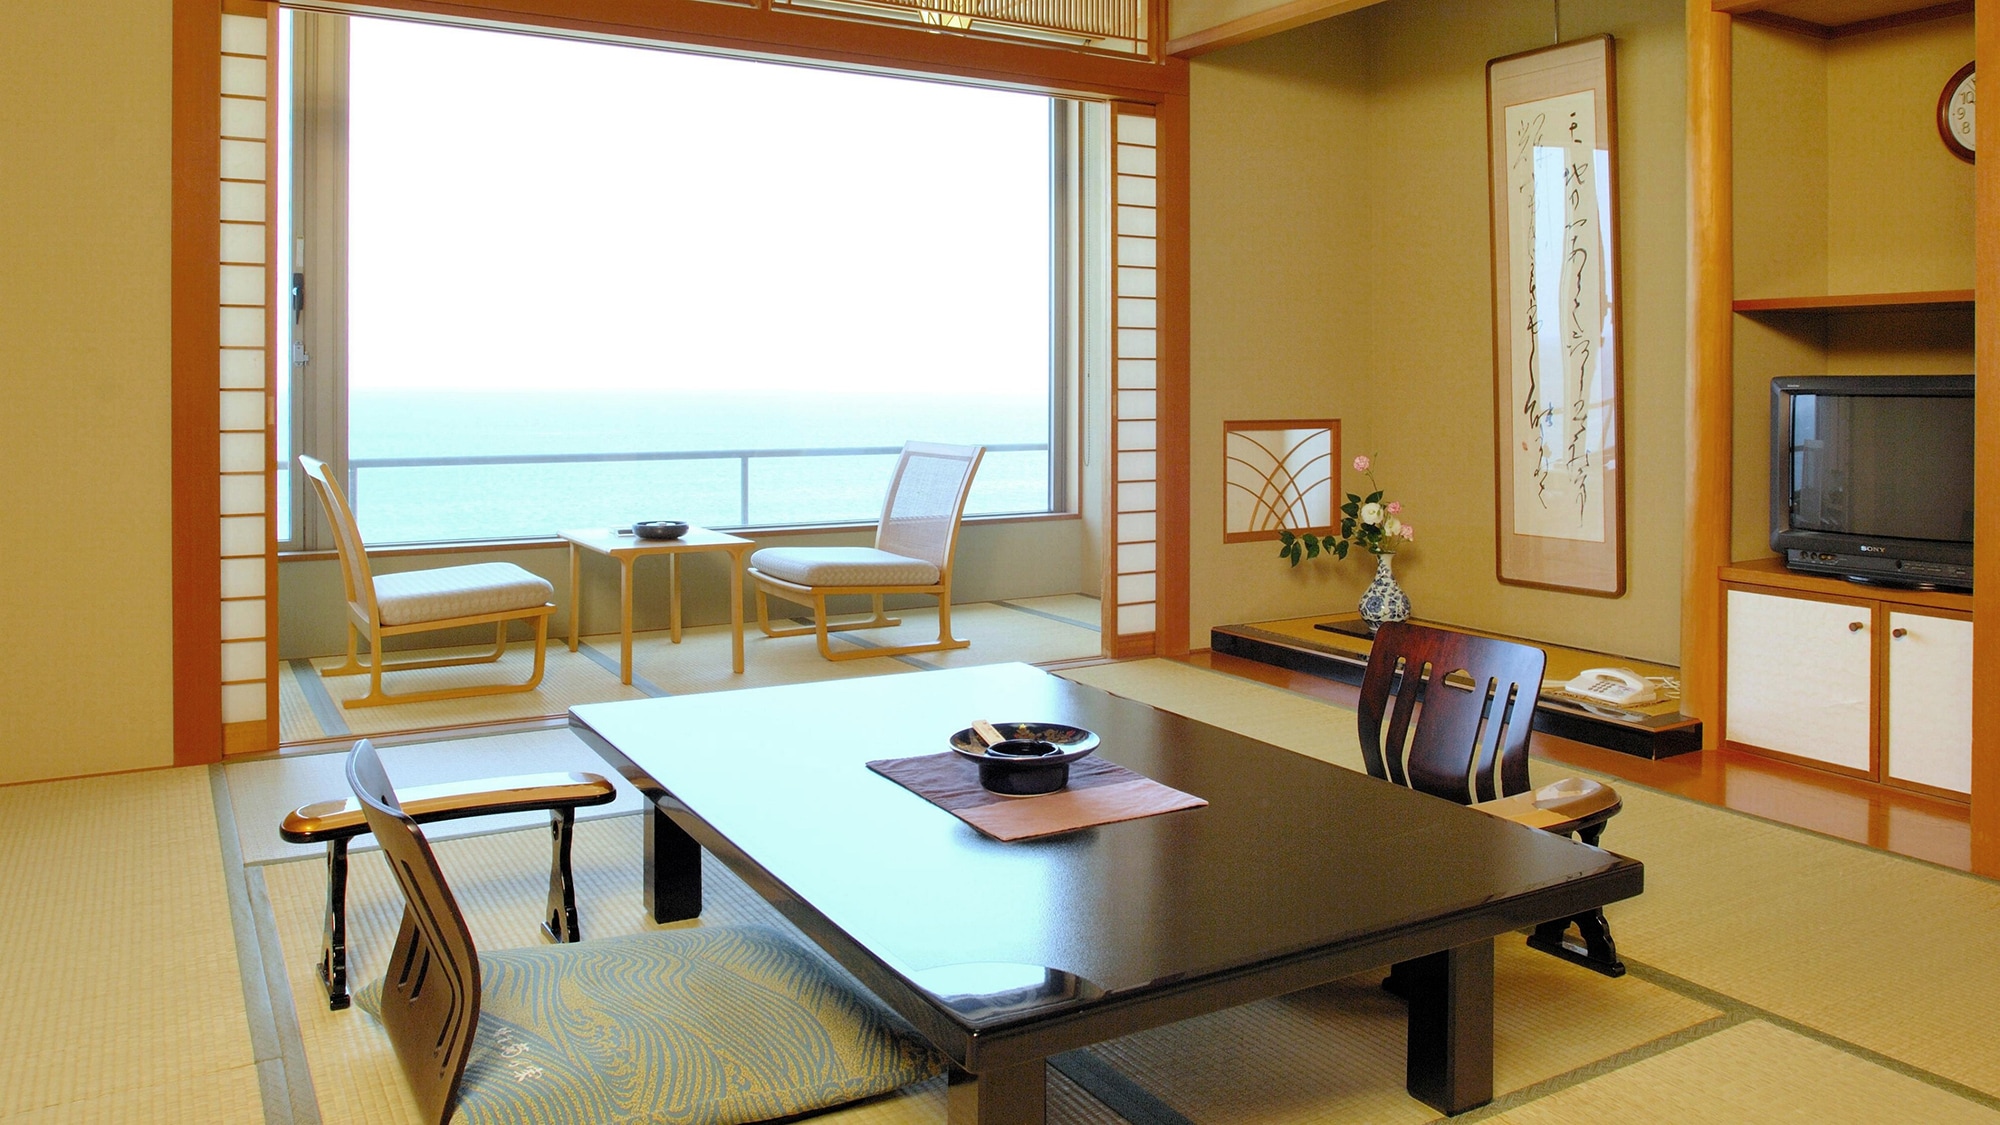 Sea side Japanese-style room 10 tatami mats